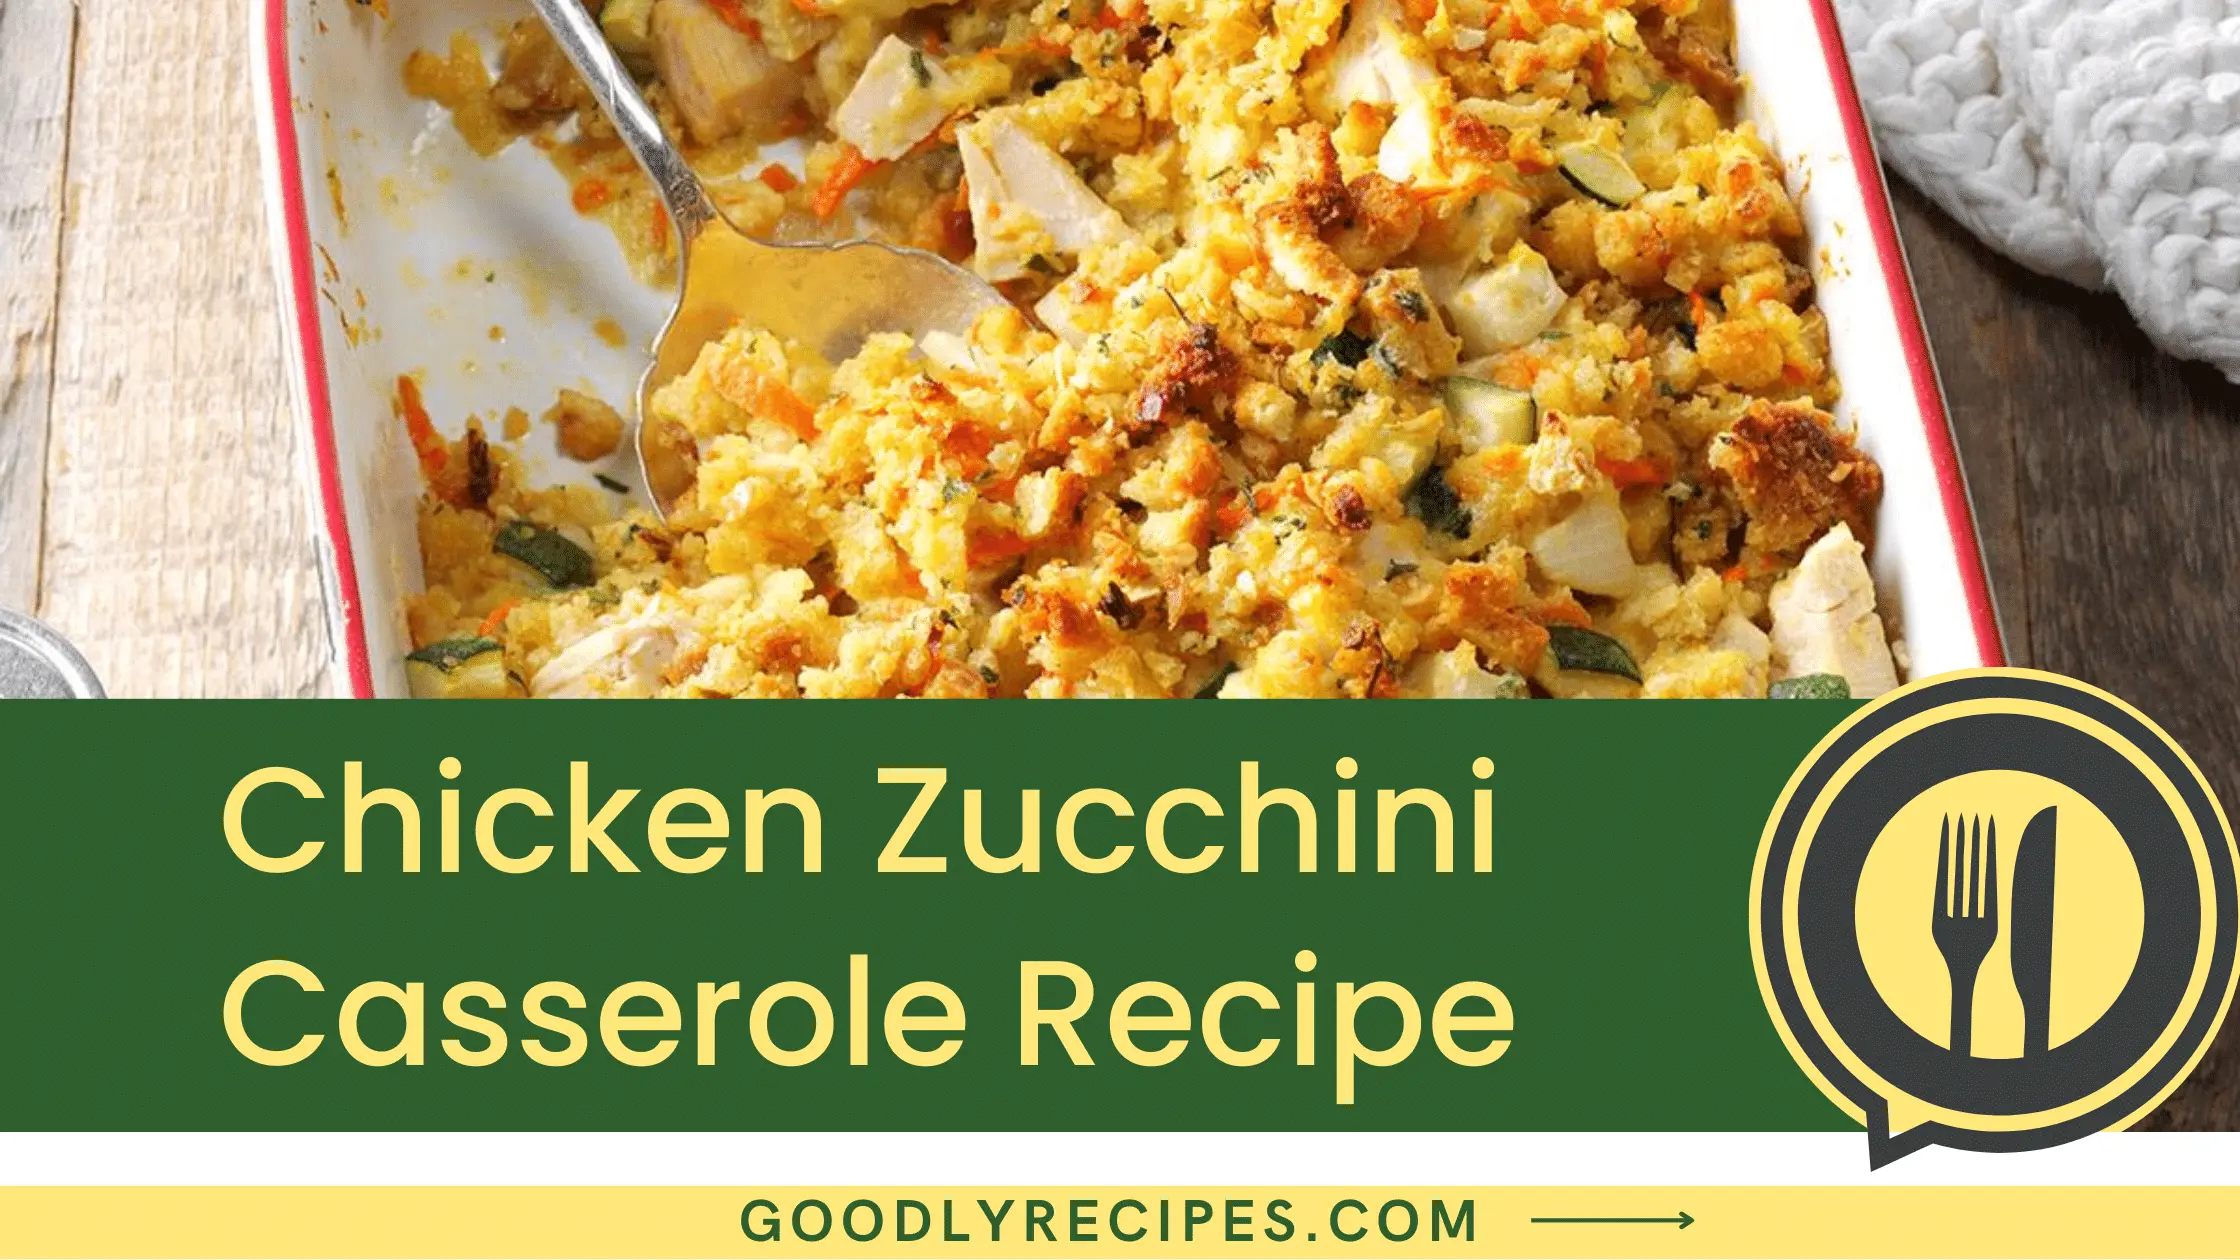 What is Chicken Zucchini Casserole?